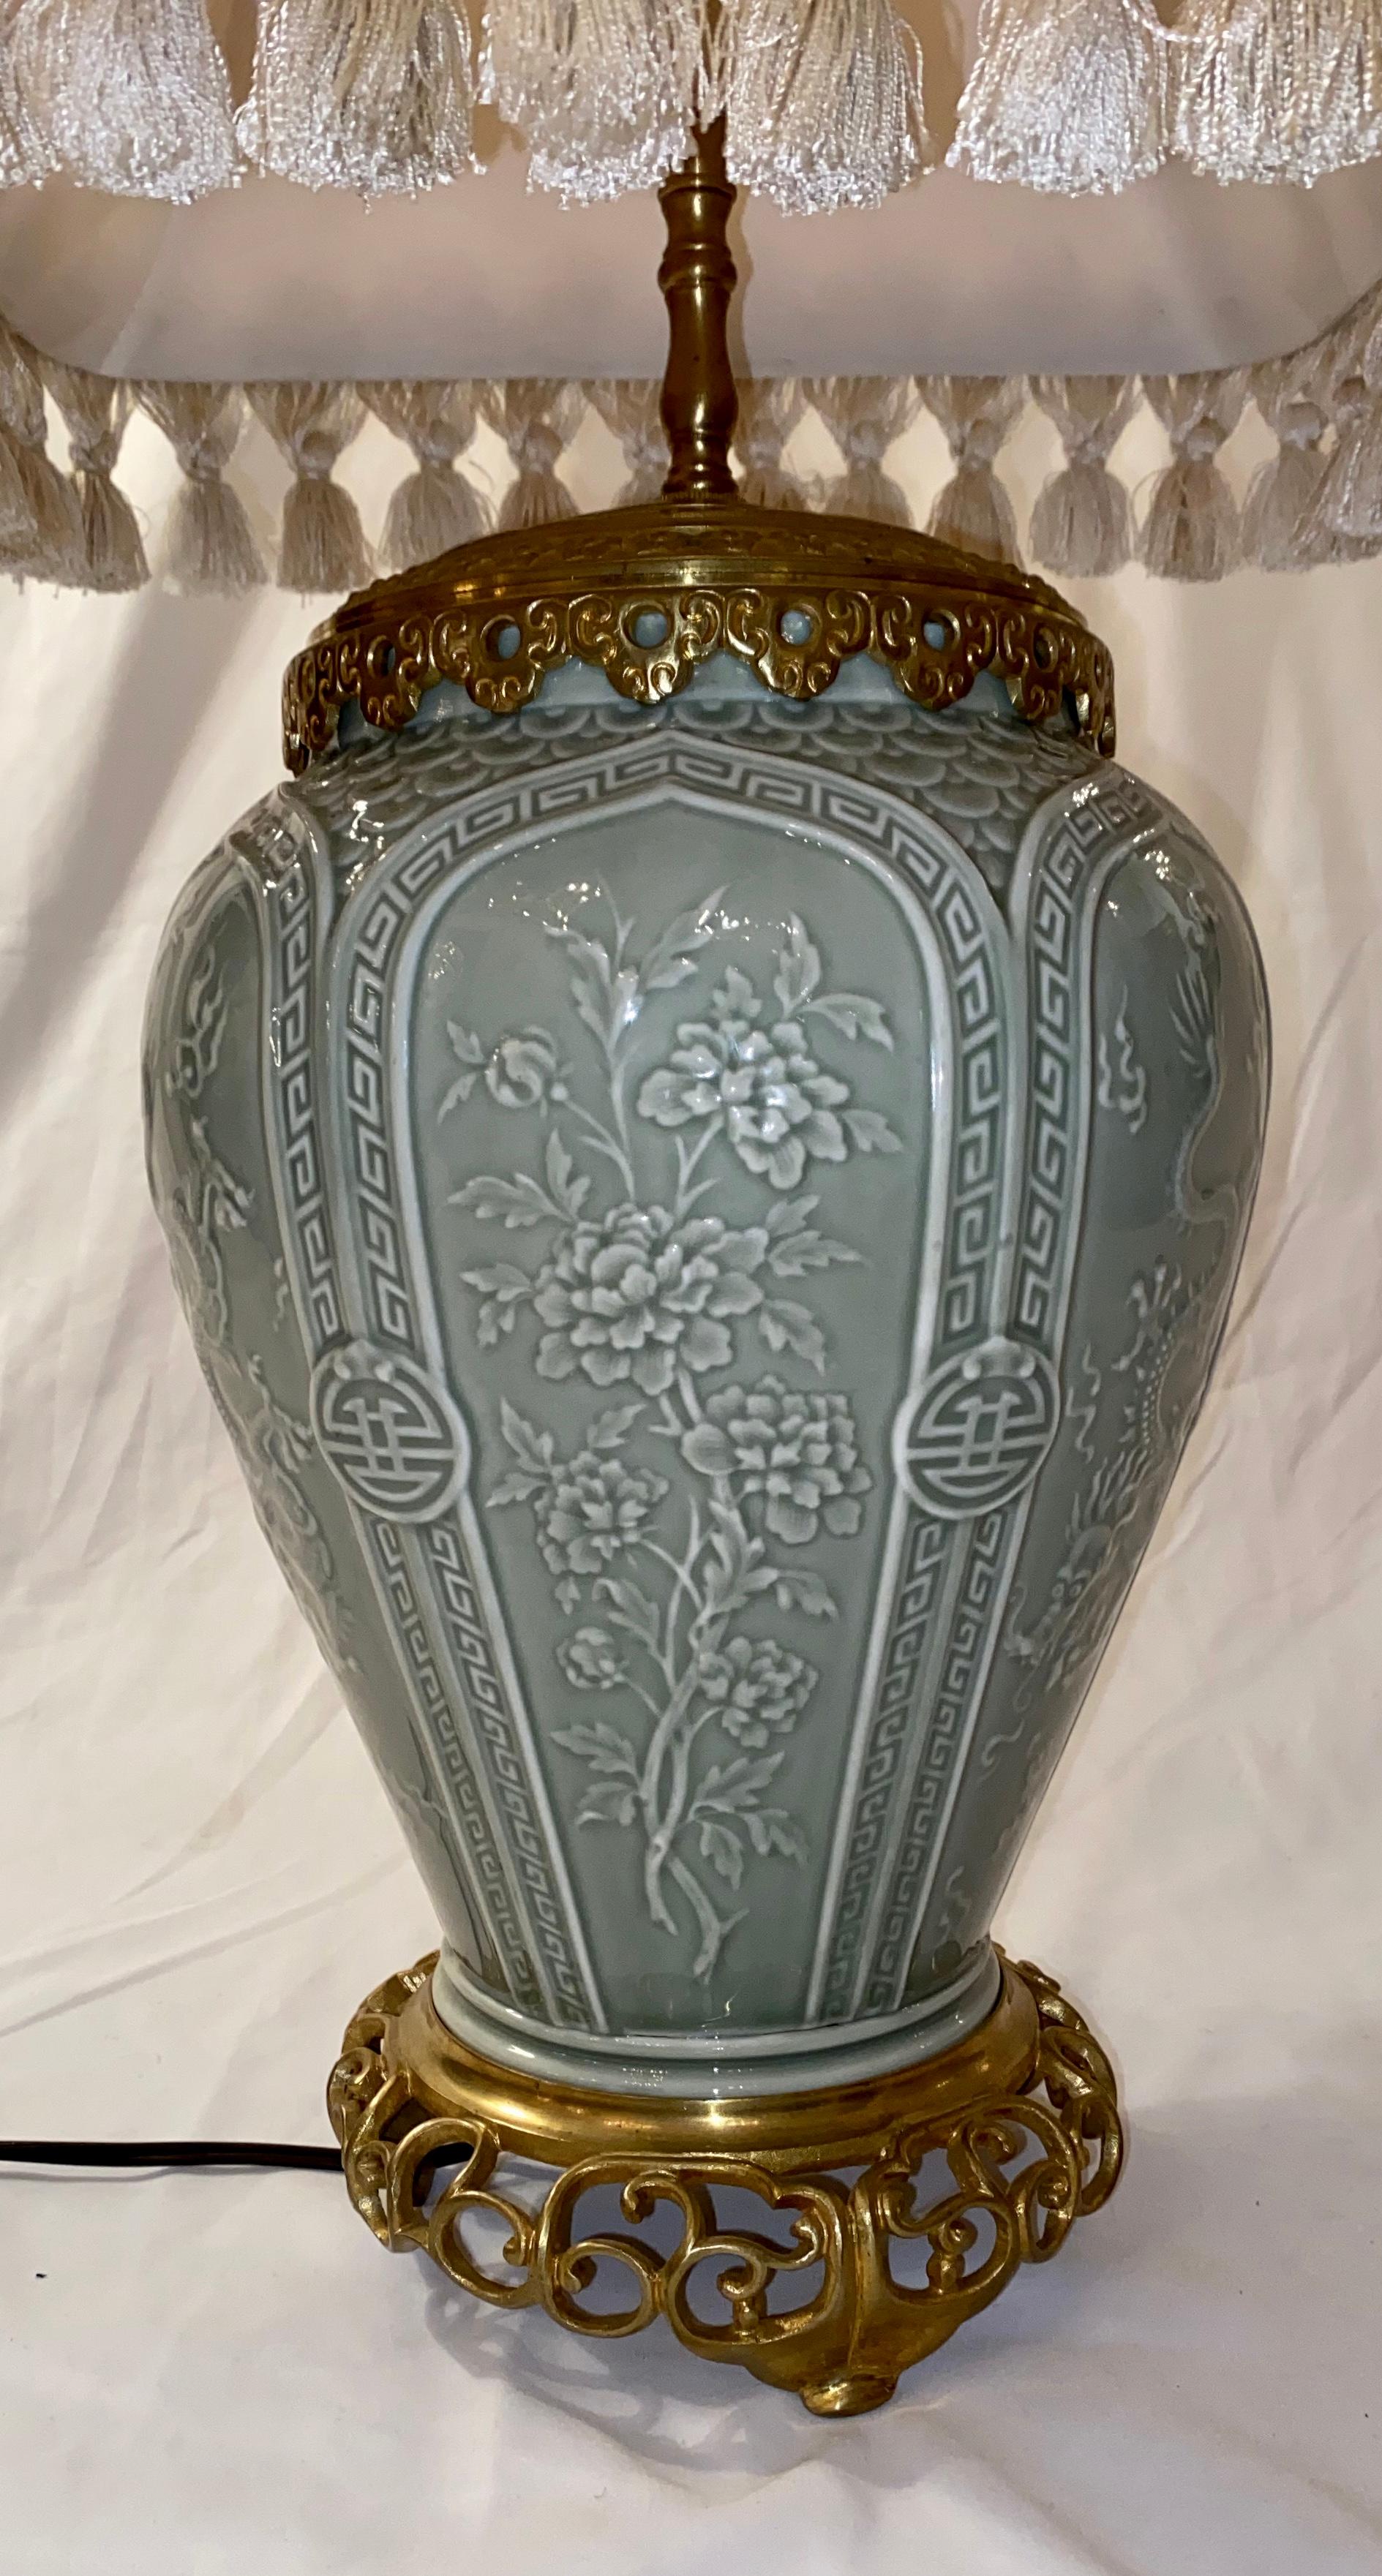 Cette belle lampe était d'abord un vase, puis montée sur du bronze pour servir de lampe. L'origine est chinoise, mais la lampe vient d'Angleterre.
 